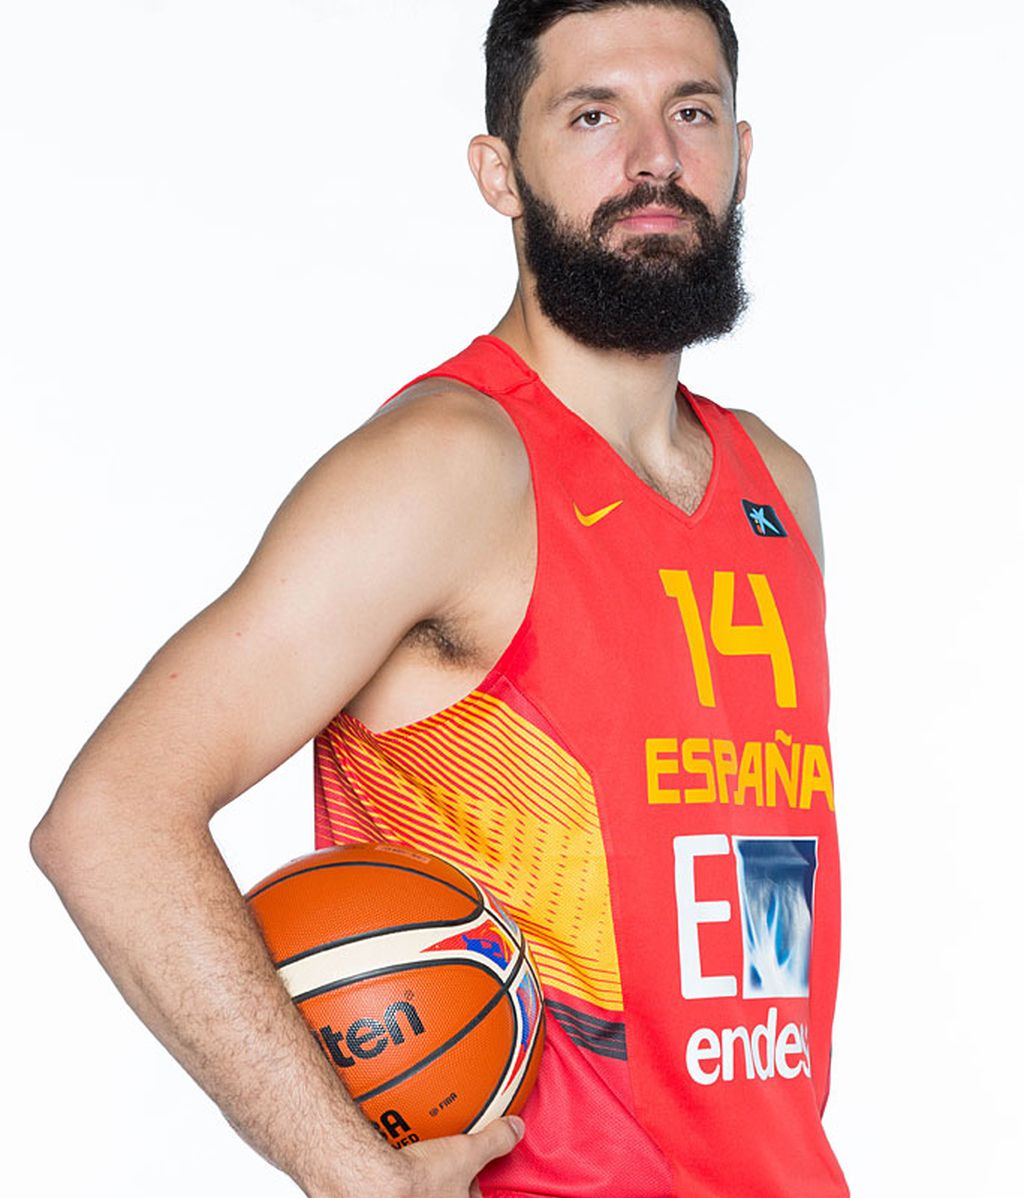 La ÑBA para el Eurobasket, uno a uno